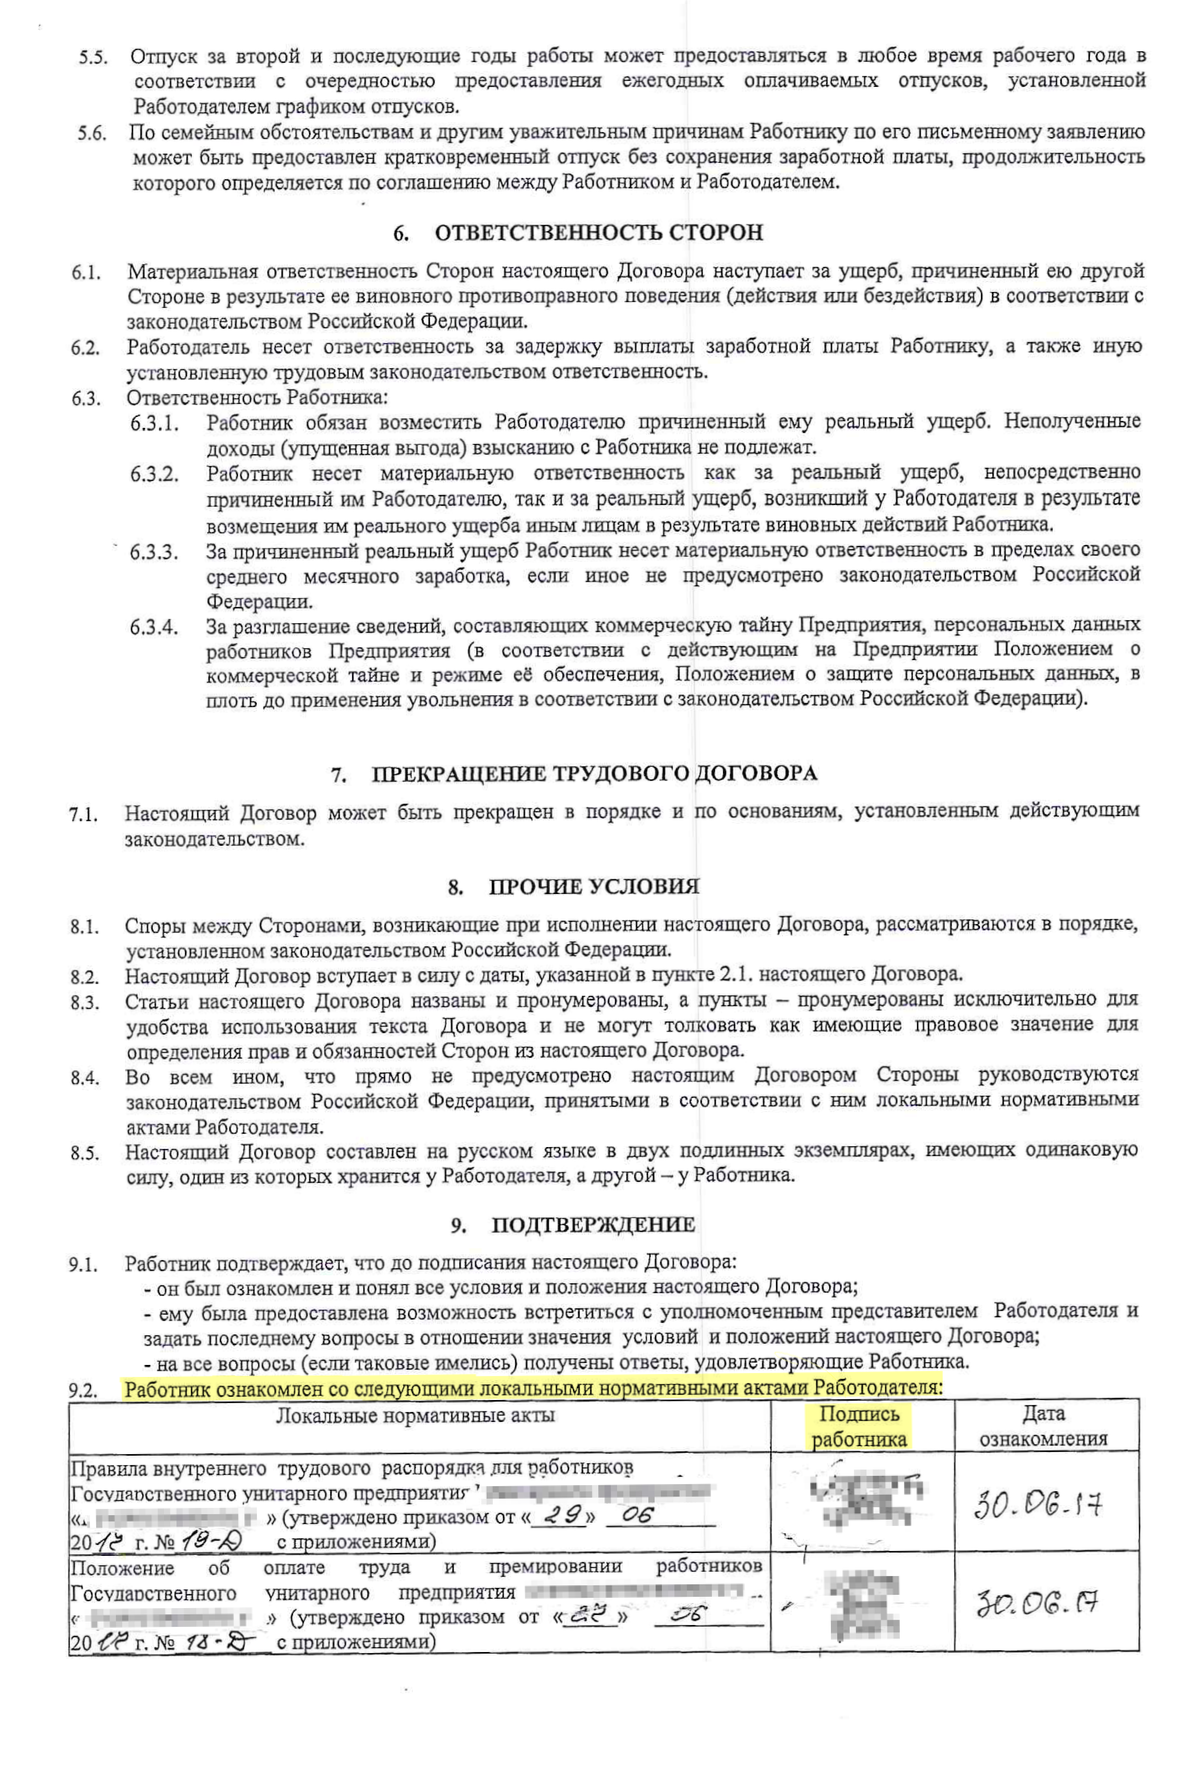 Статья 79 ТК РФ. Прекращение срочного трудового договора (действующая редакция)